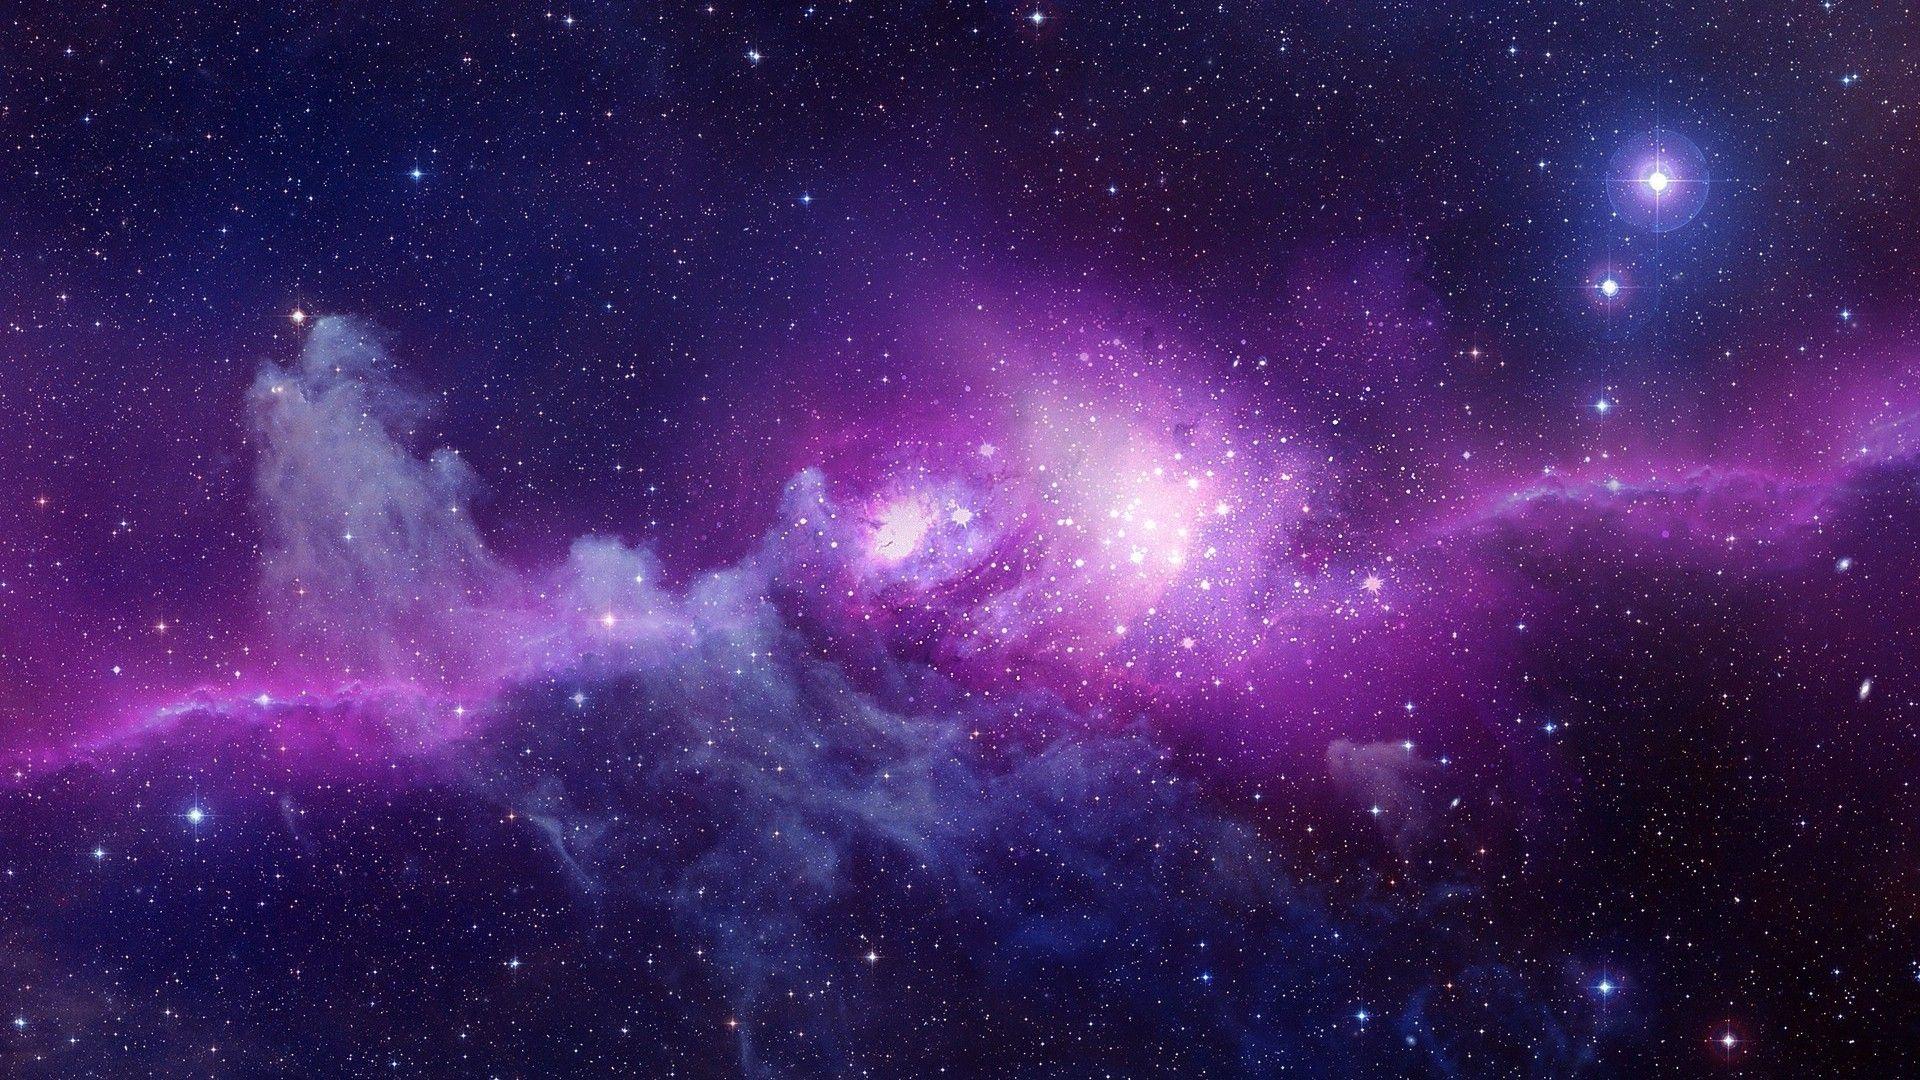 Hình nền vũ trụ màu tím: Bạn yêu thích sự toàn vẹn và bí ẩn của vũ trụ? Hình nền vũ trụ màu tím sẽ đưa bạn vào một chuyến phiêu lưu thú vị giữa những vì sao quyến rũ. Hãy thức dậy dưới một bầu trời tím đậm với những hình ảnh độc đáo chỉ có ở đây.